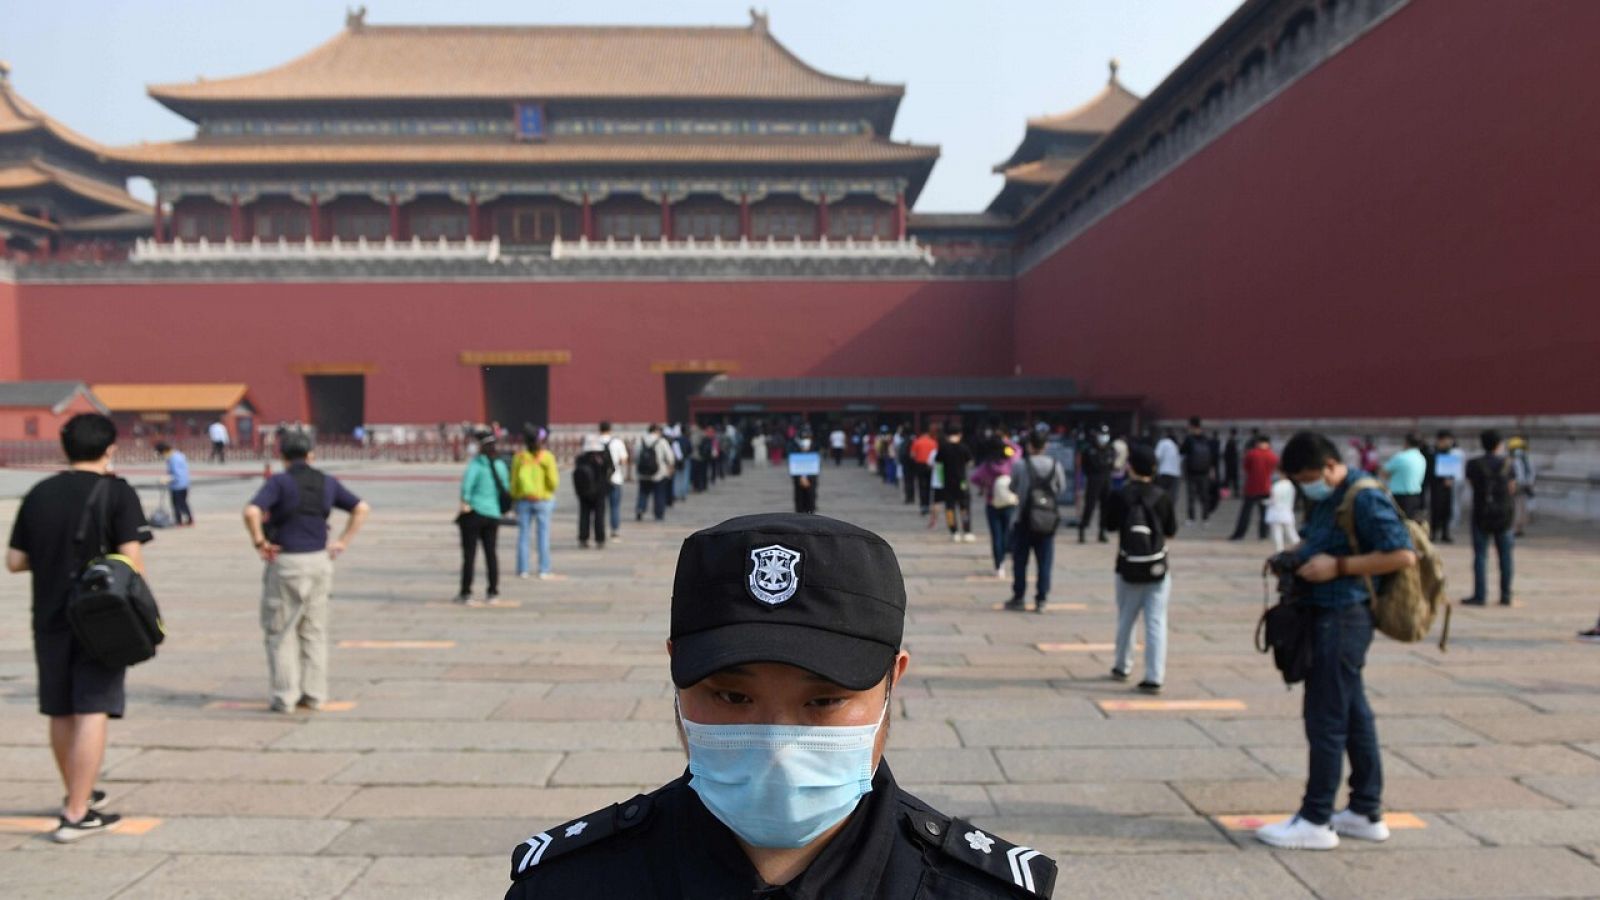 Un guardia vigila que la gente hace cola manteniendo la distancia de seguridad (Pekín)